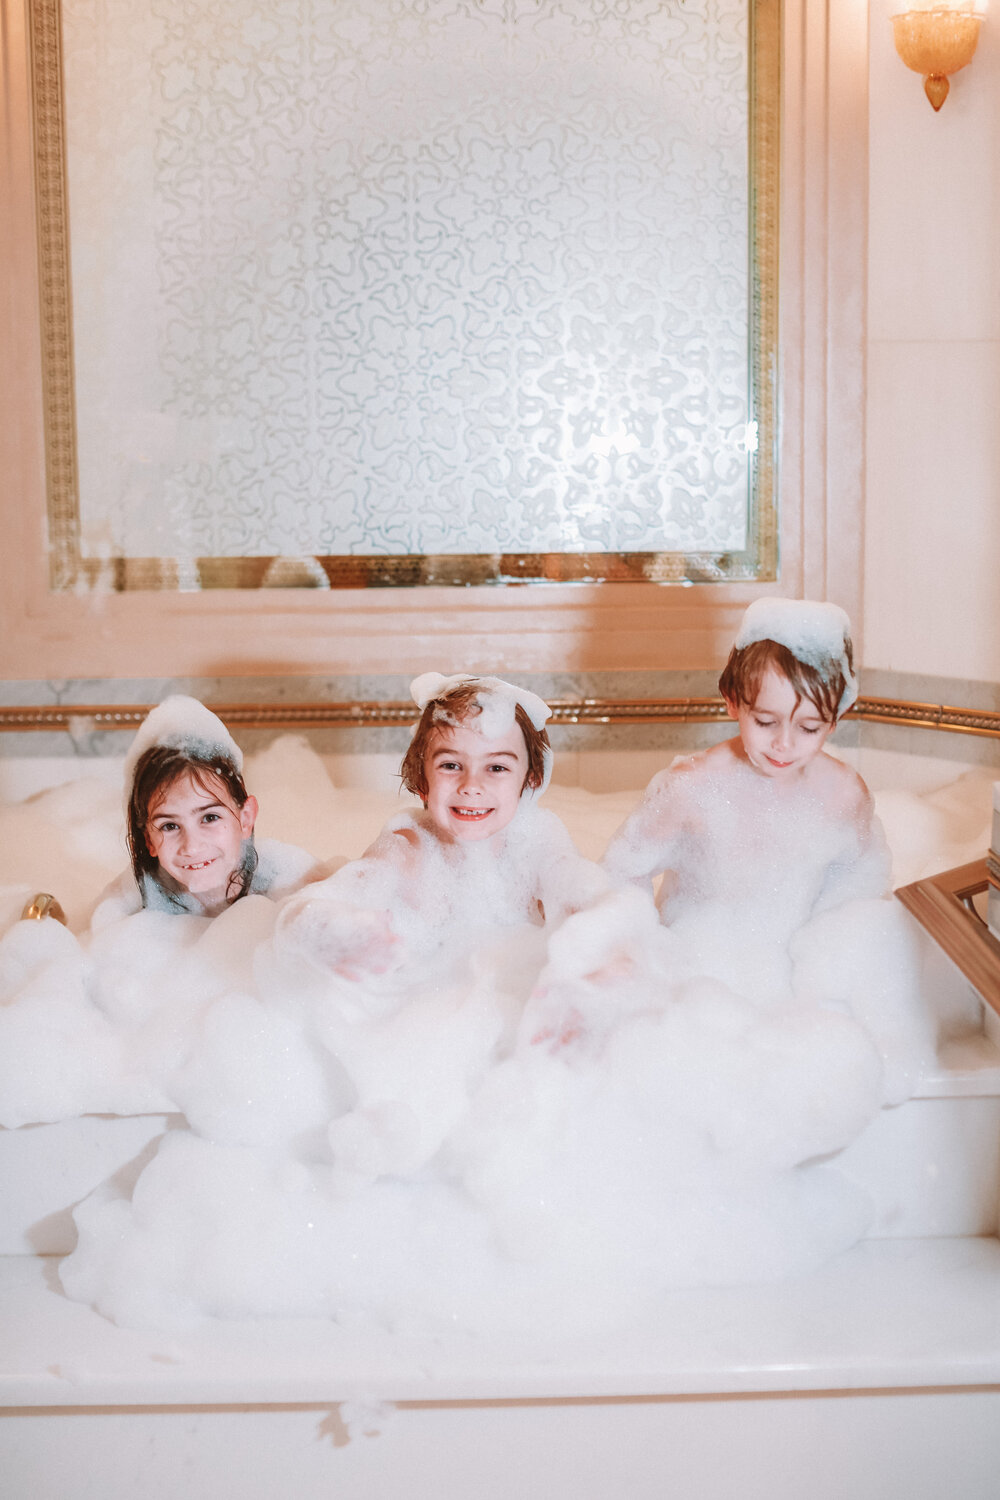 The Khaleej suite's jacuzzi makes for the kids' best bath ever